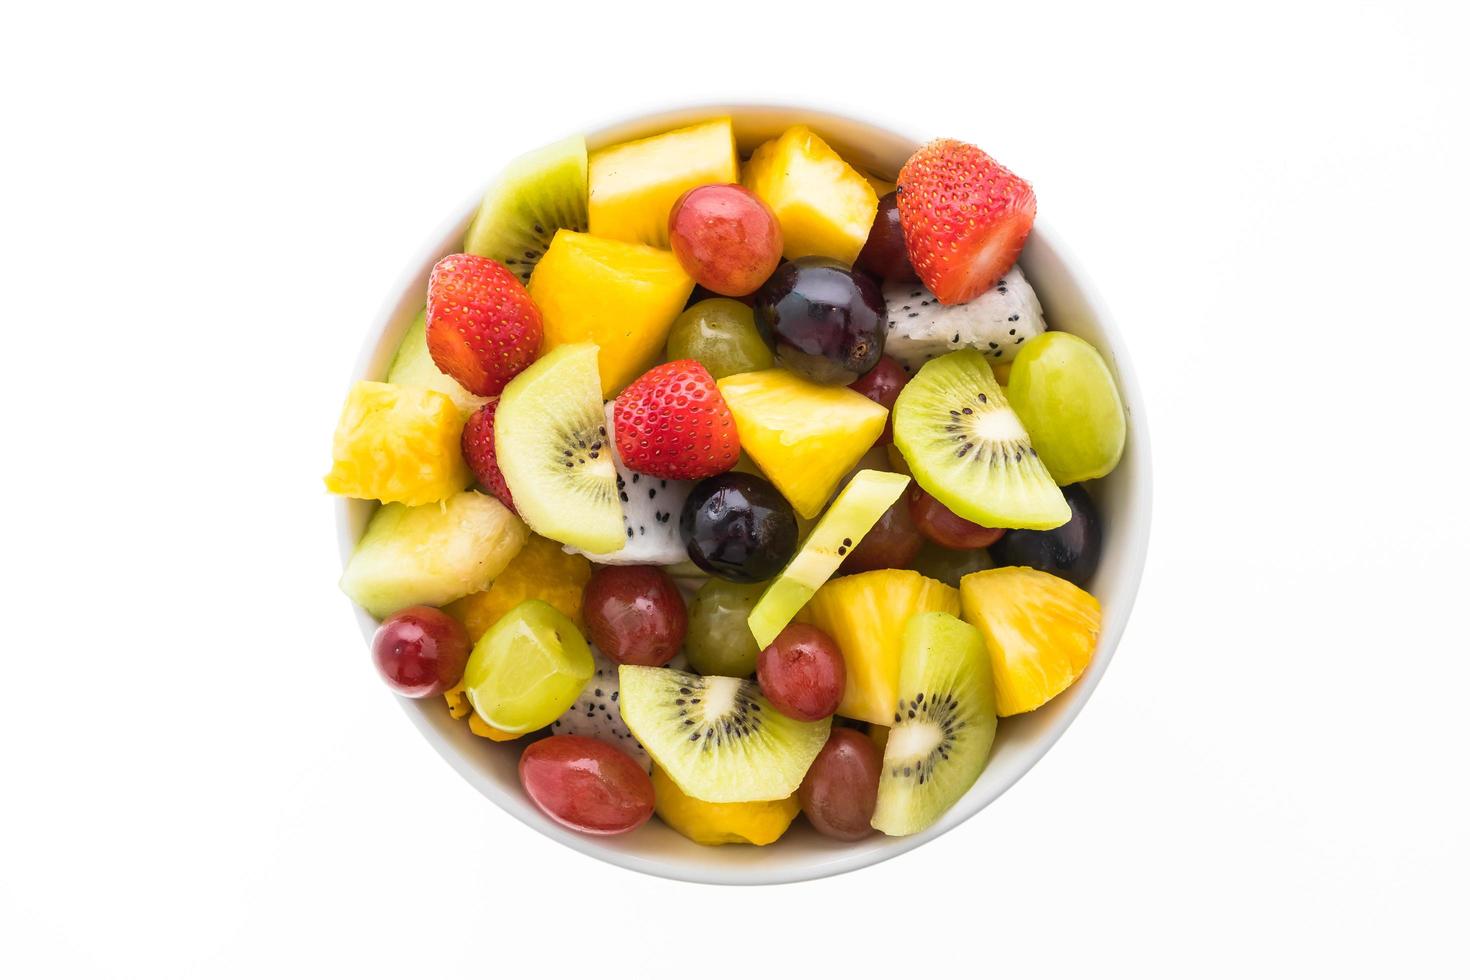 fruits mélangés sur plaque blanche photo